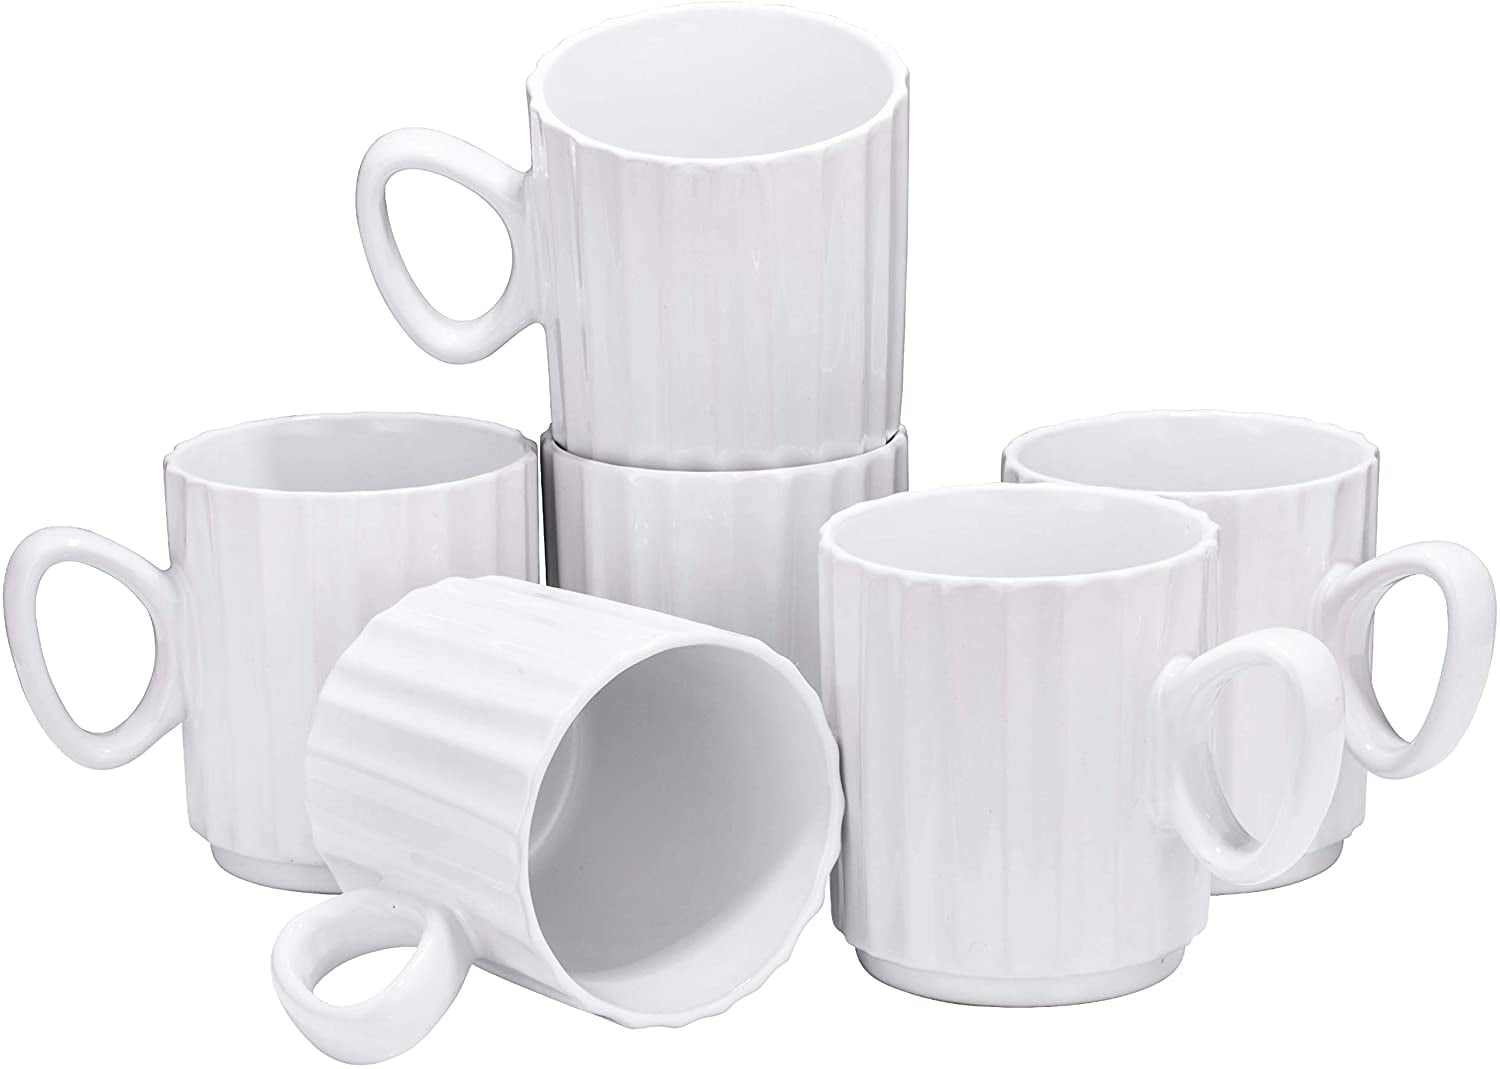 Coloch 6 Pack Ceramic Coffee Mug Set, 10 Oz Porcelain Coffee Cups Colorful  Inside Milk Mugs Restaura…See more Coloch 6 Pack Ceramic Coffee Mug Set, 10